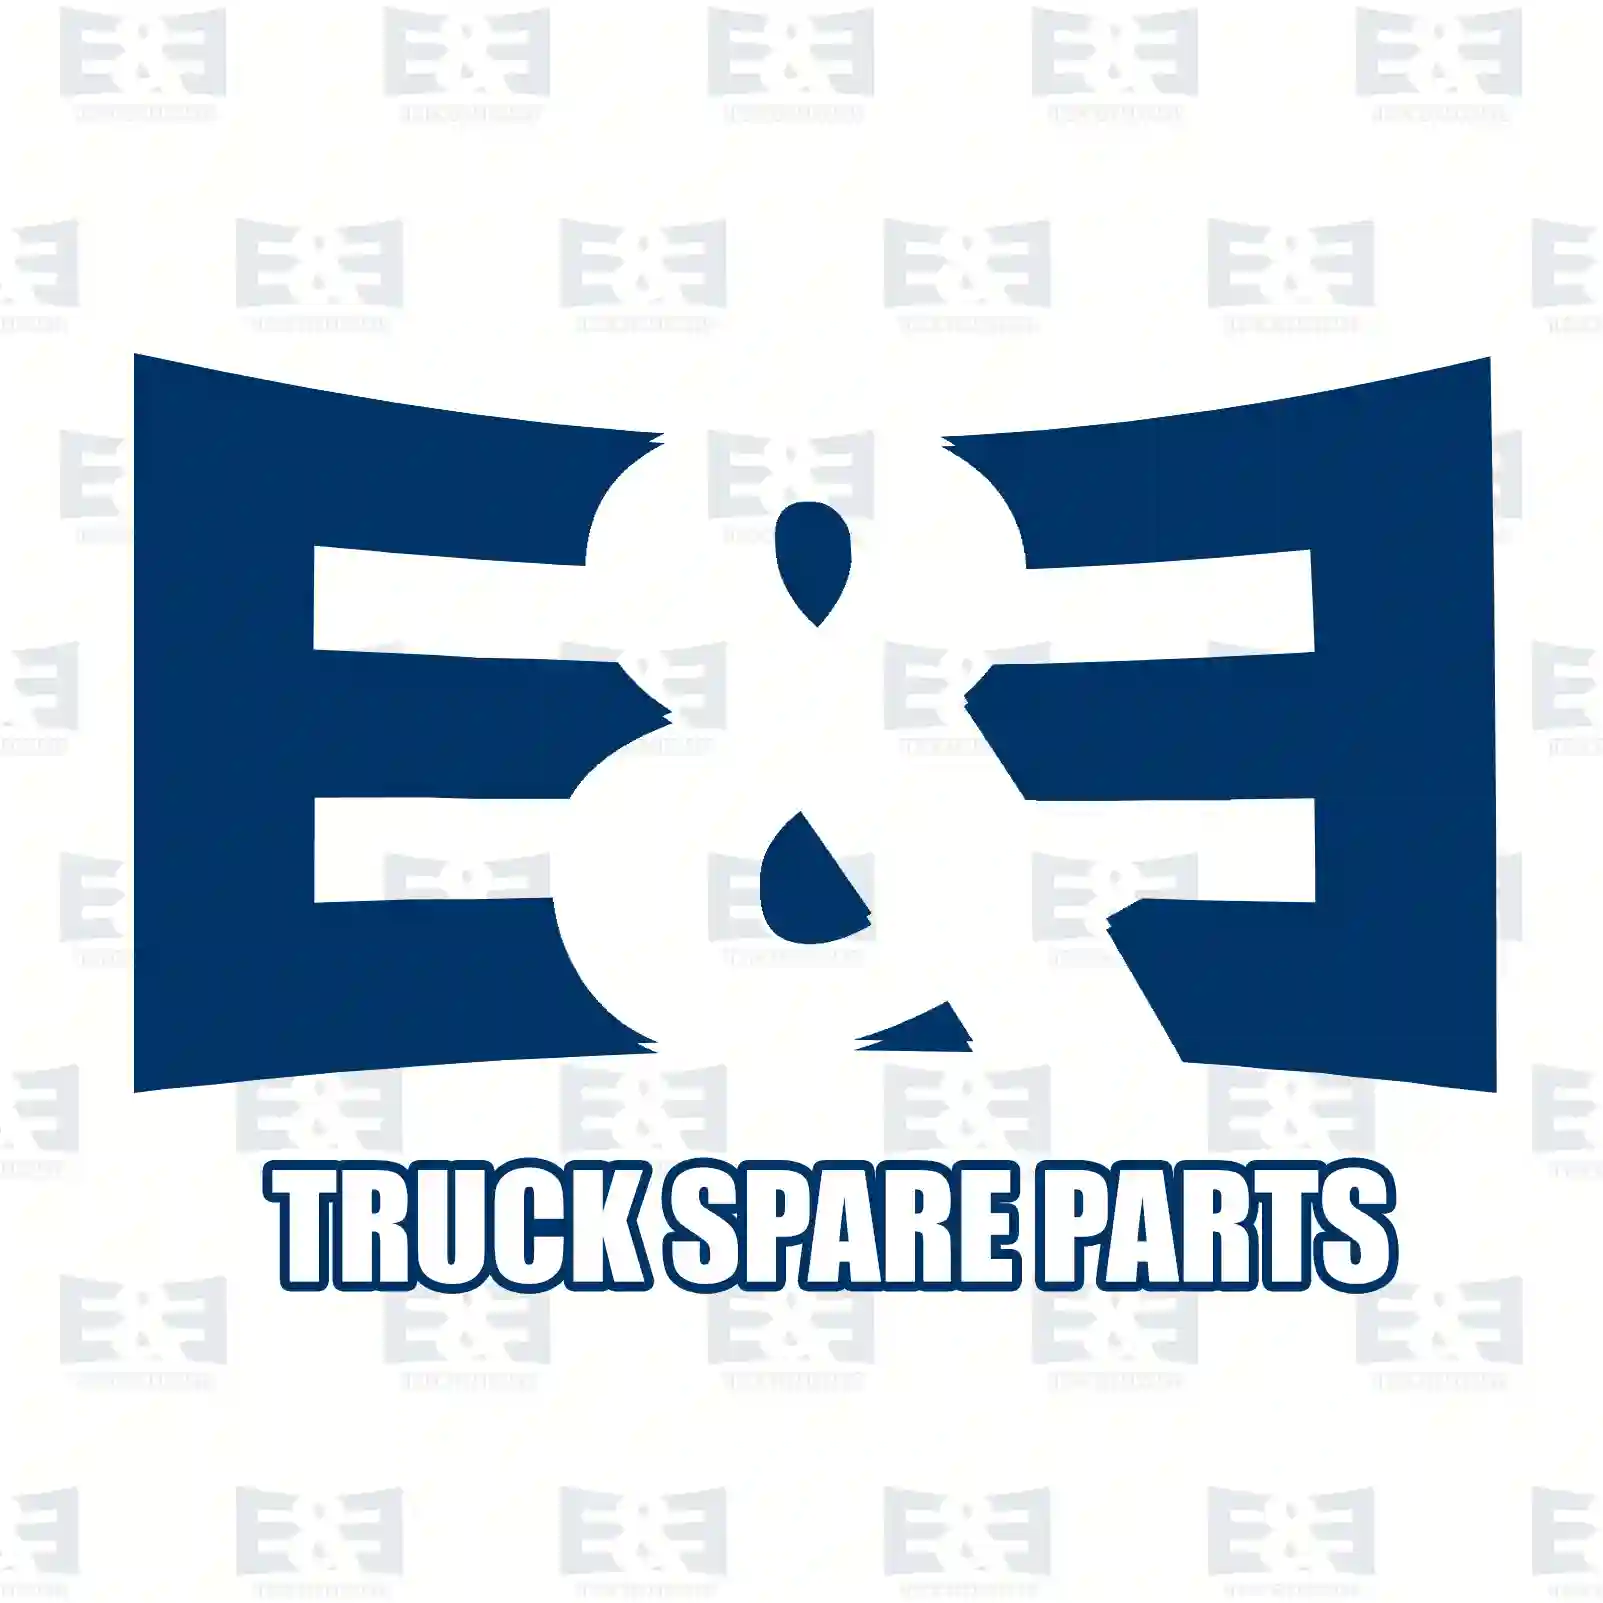 Feed pump, 2E2286898, 5001821529 ||  2E2286898 E&E Truck Spare Parts | Truck Spare Parts, Auotomotive Spare Parts Feed pump, 2E2286898, 5001821529 ||  2E2286898 E&E Truck Spare Parts | Truck Spare Parts, Auotomotive Spare Parts